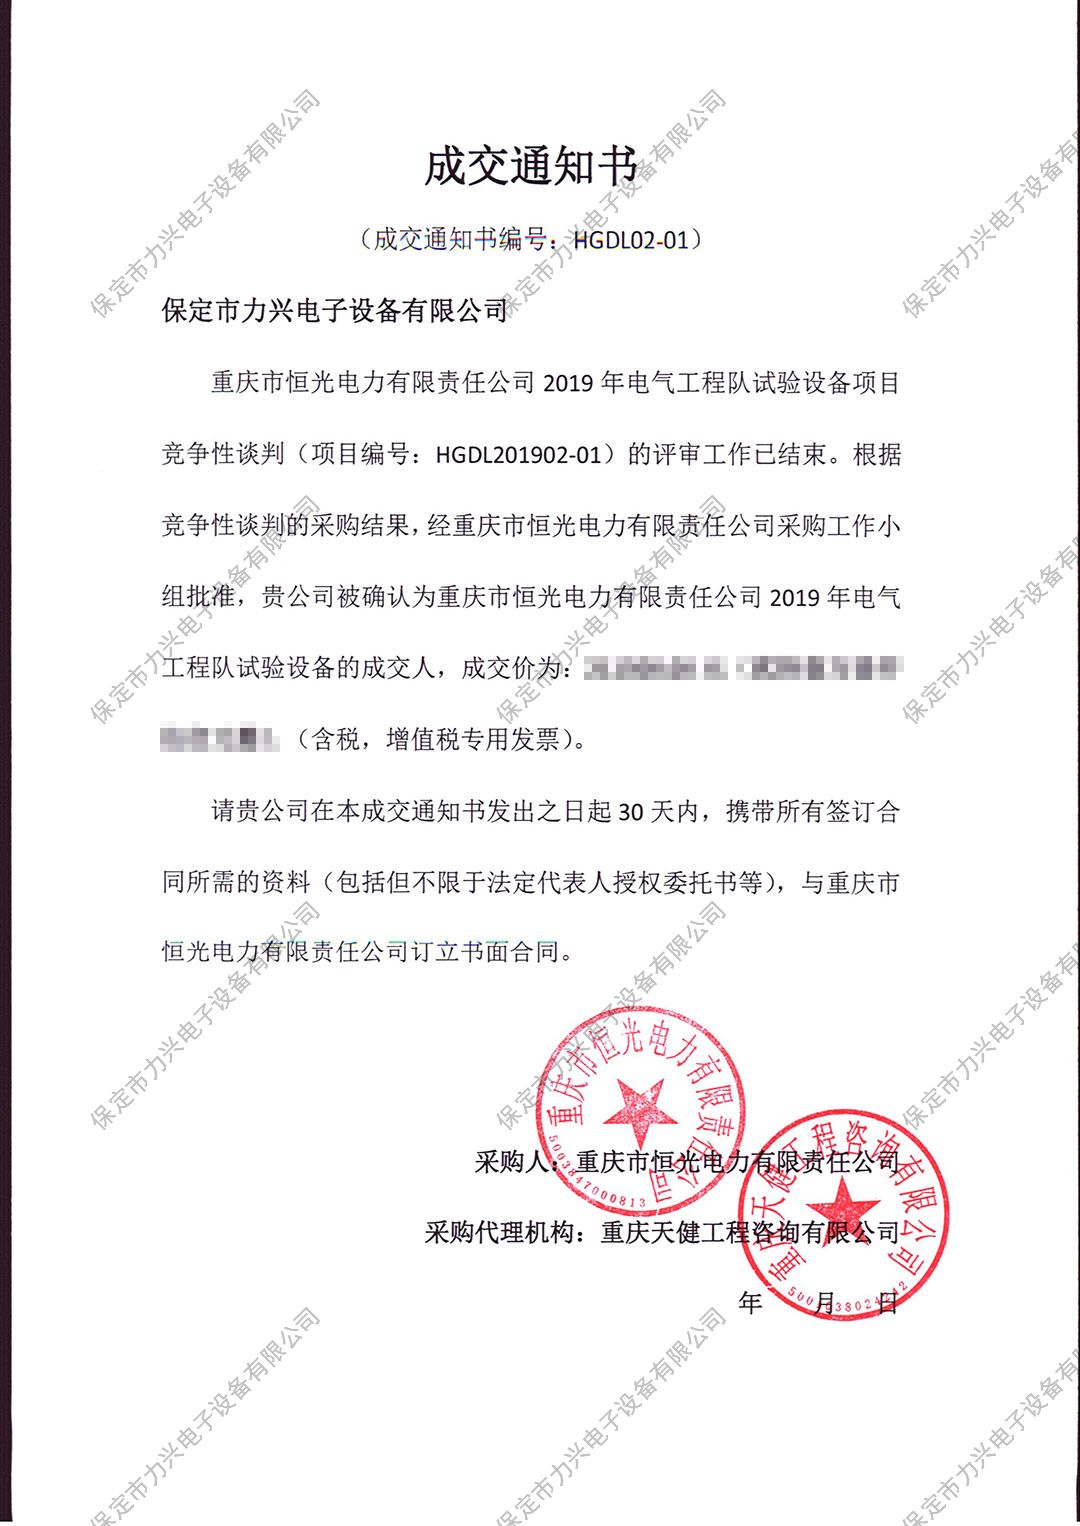 重庆市恒光电力有限责任公司2019年电气工程队试验项目竞争性谈判.jpg